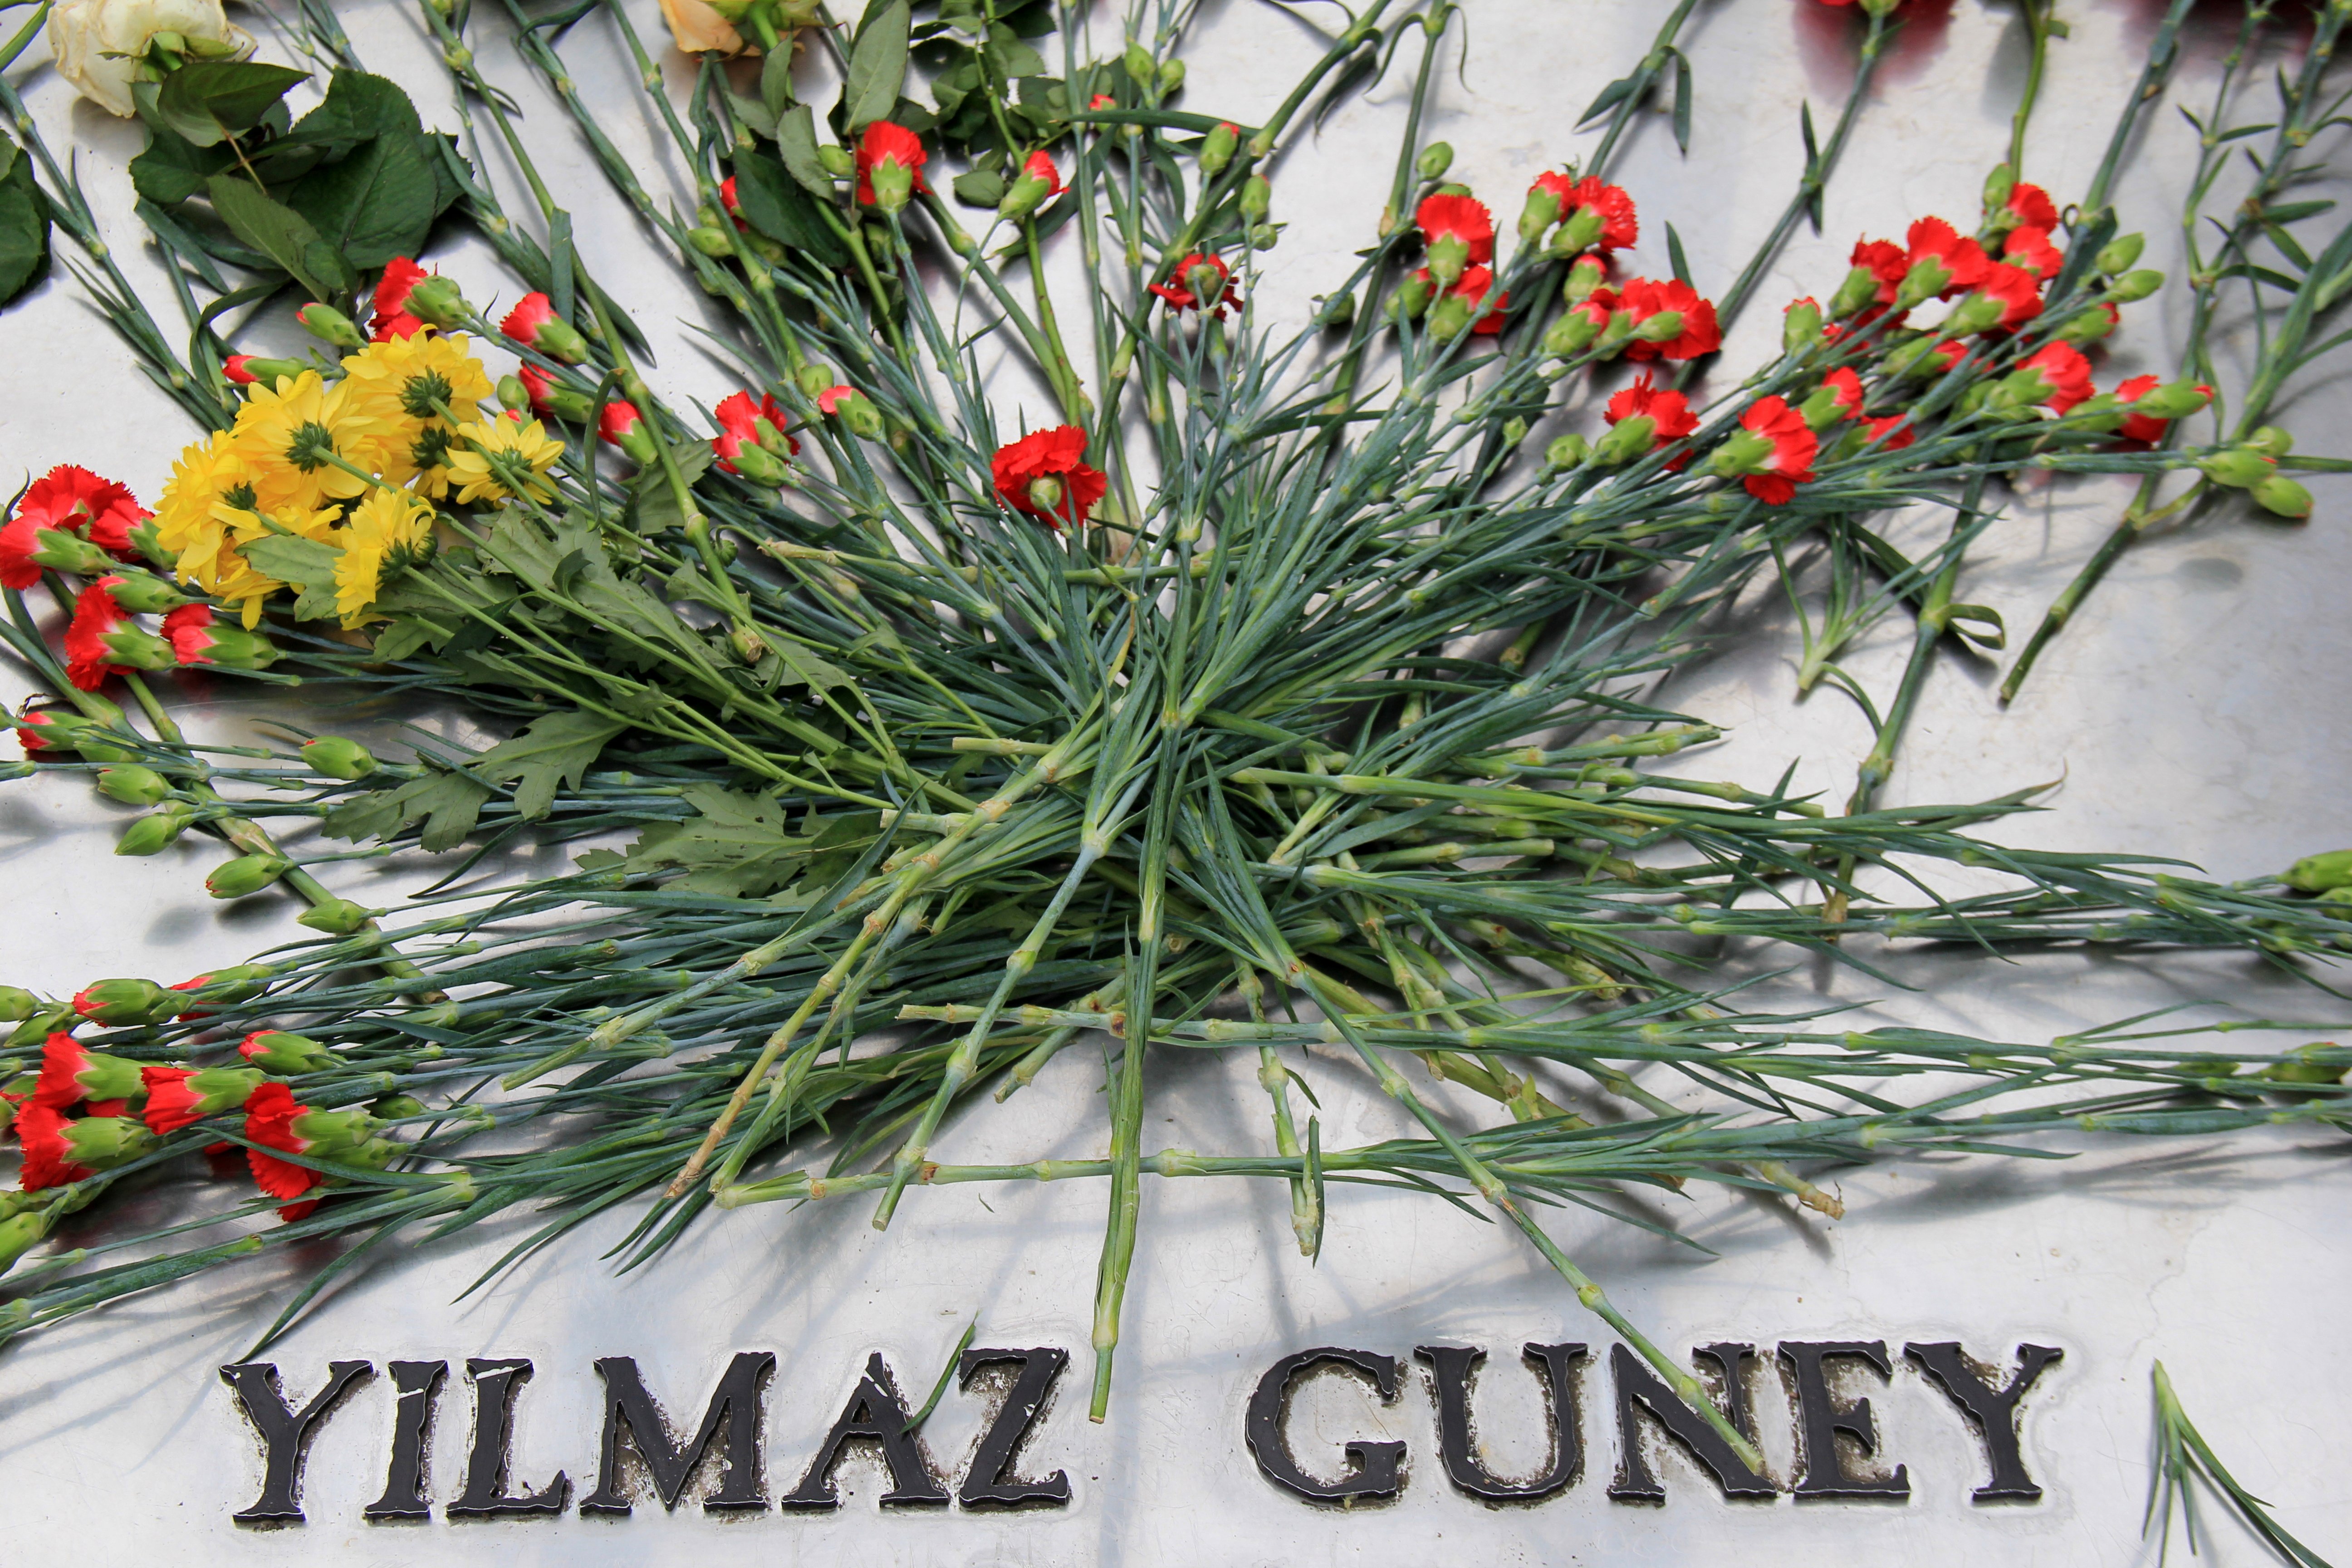 Yilmaz Guney Grave